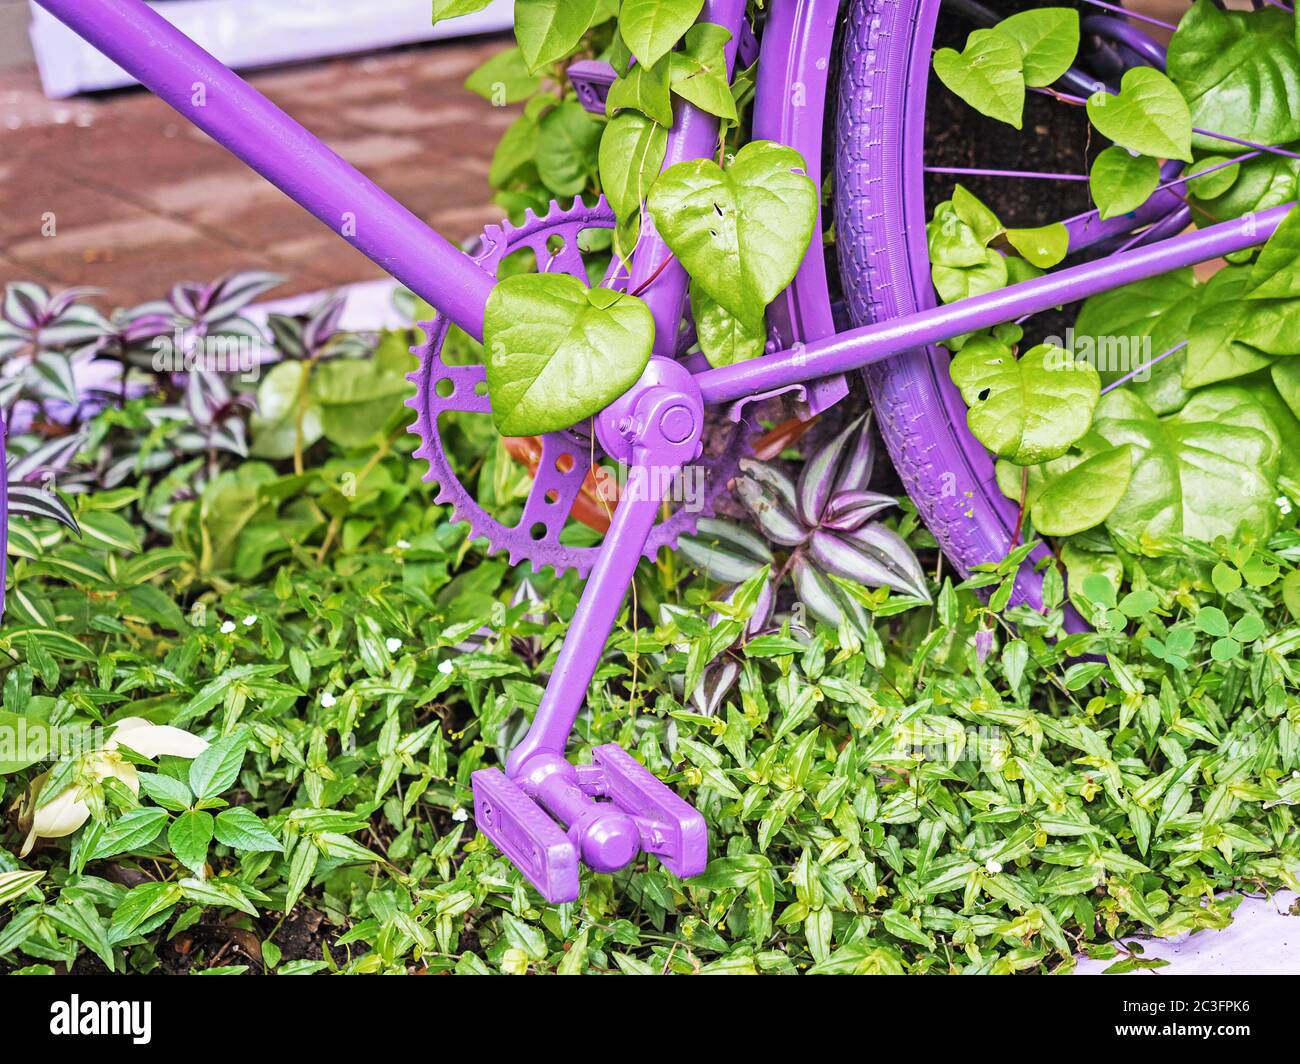 Il pedale viola della bicicletta e parte della ruota posteriore in verde lascia in primo piano Foto Stock